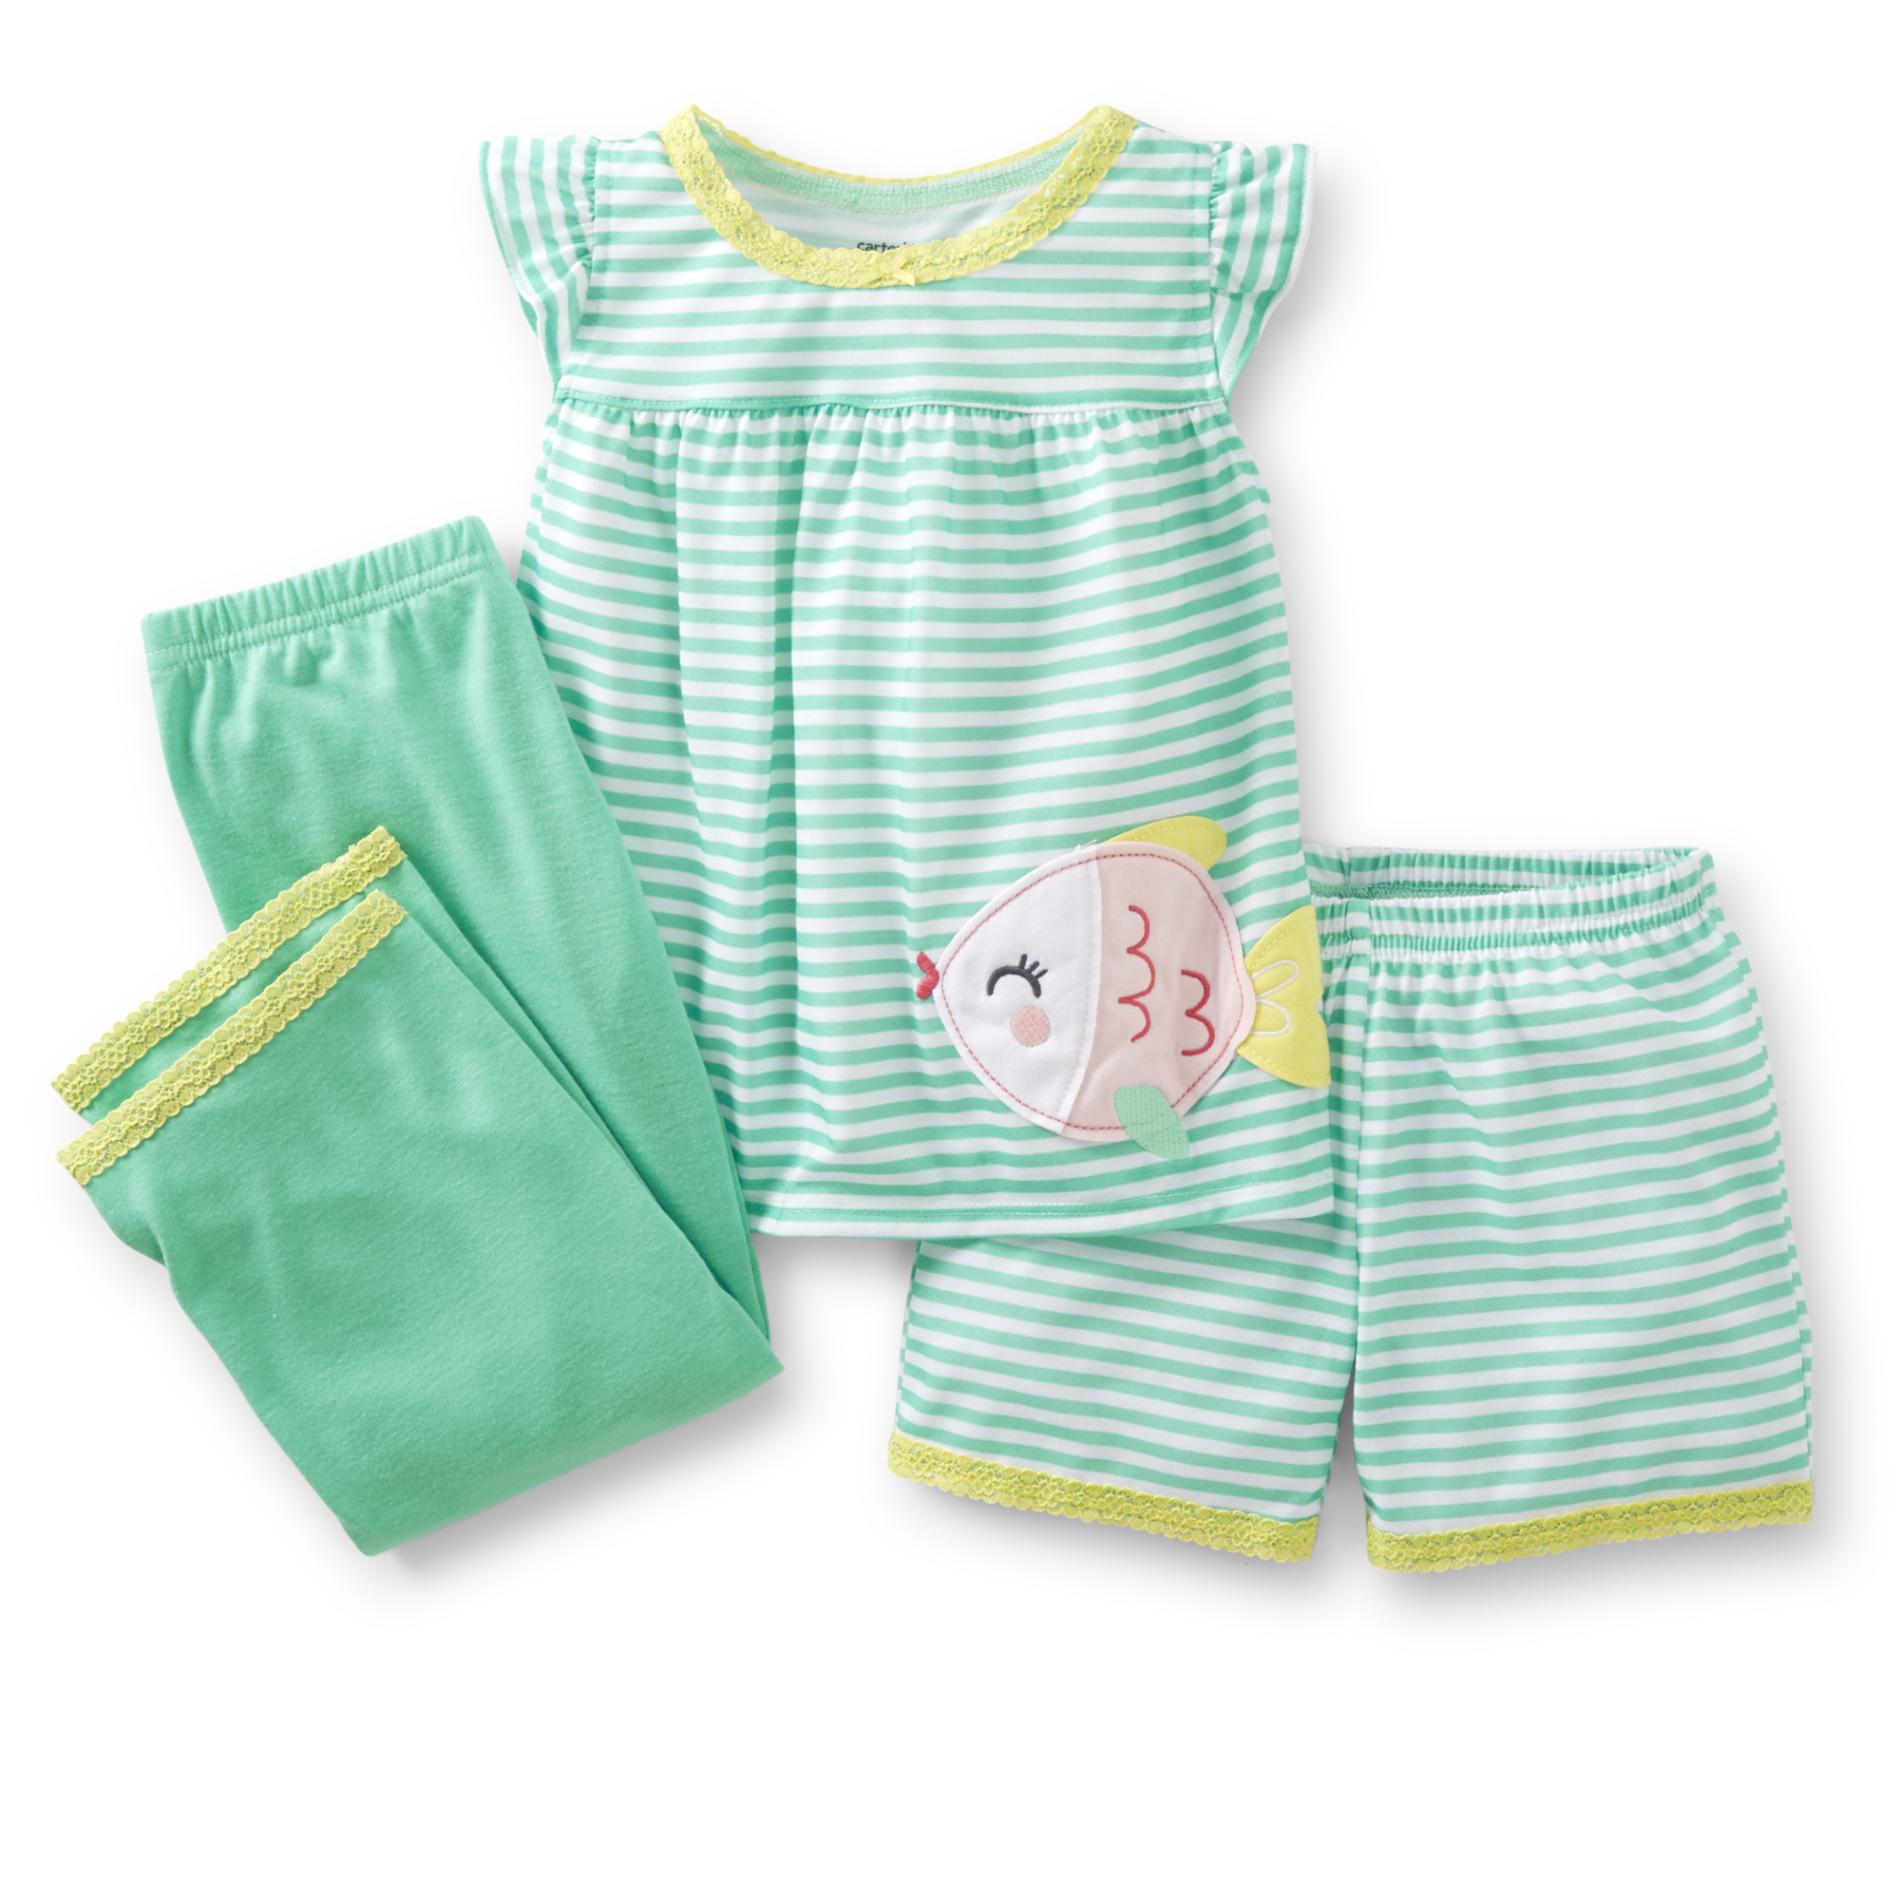 Carter's Toddler Girl's 3-Piece Pajama Set - Fish